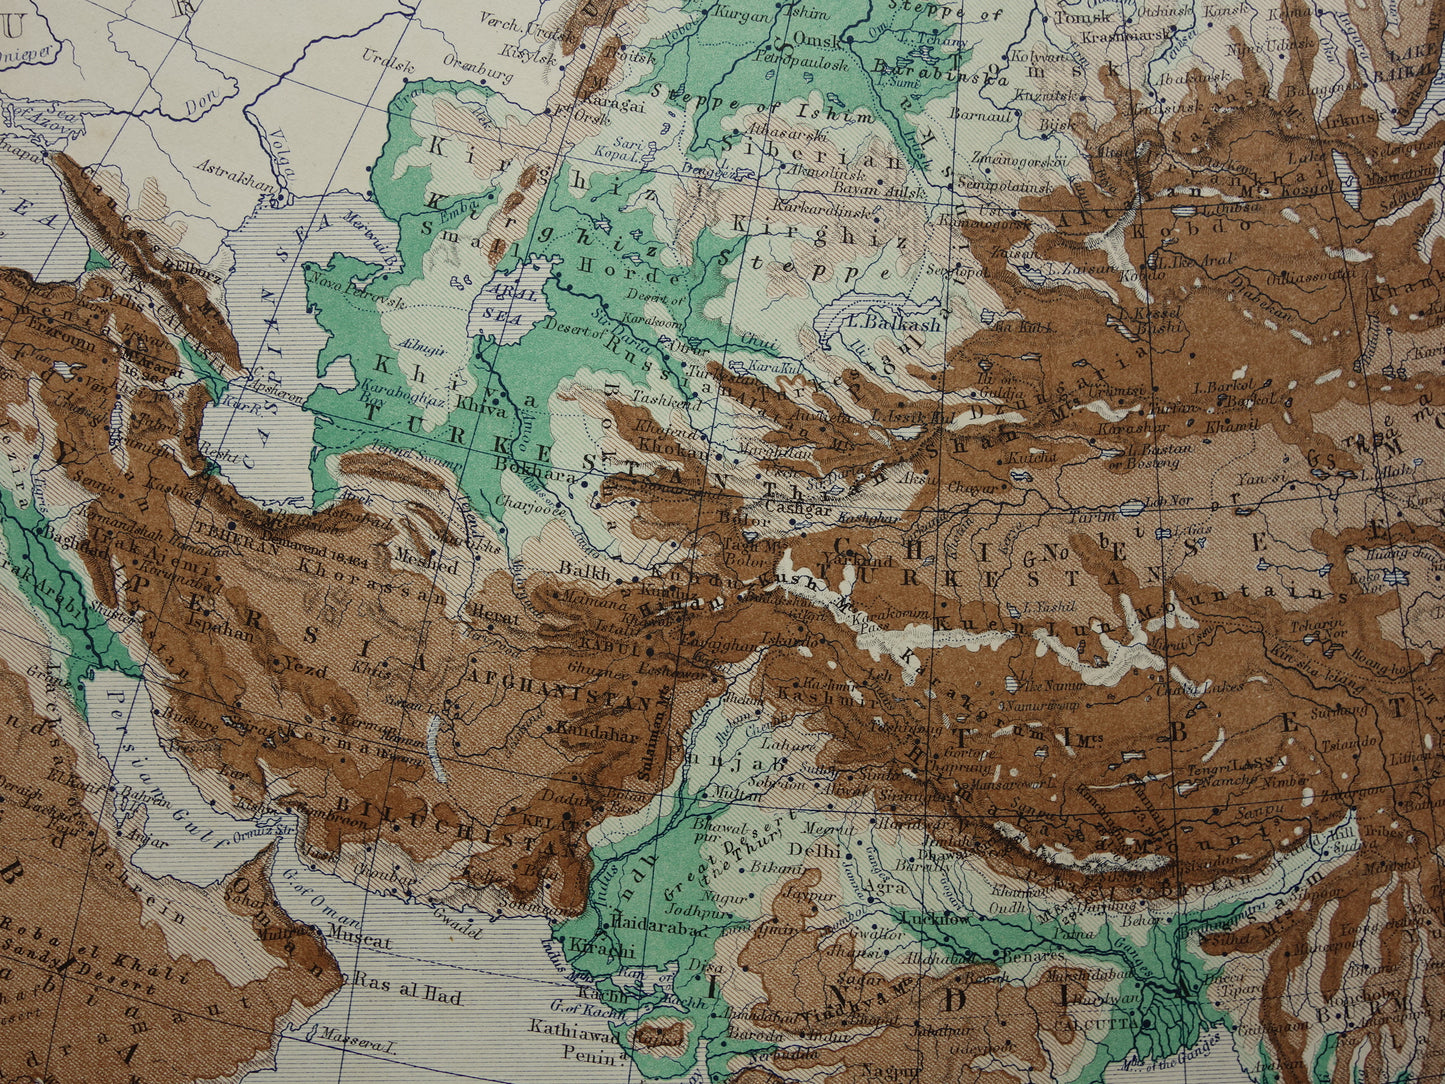 Azië antieke kaart van Azië 140+ jaar oude landkaart van continent uit 1879 - originele vintage hoogtekaart